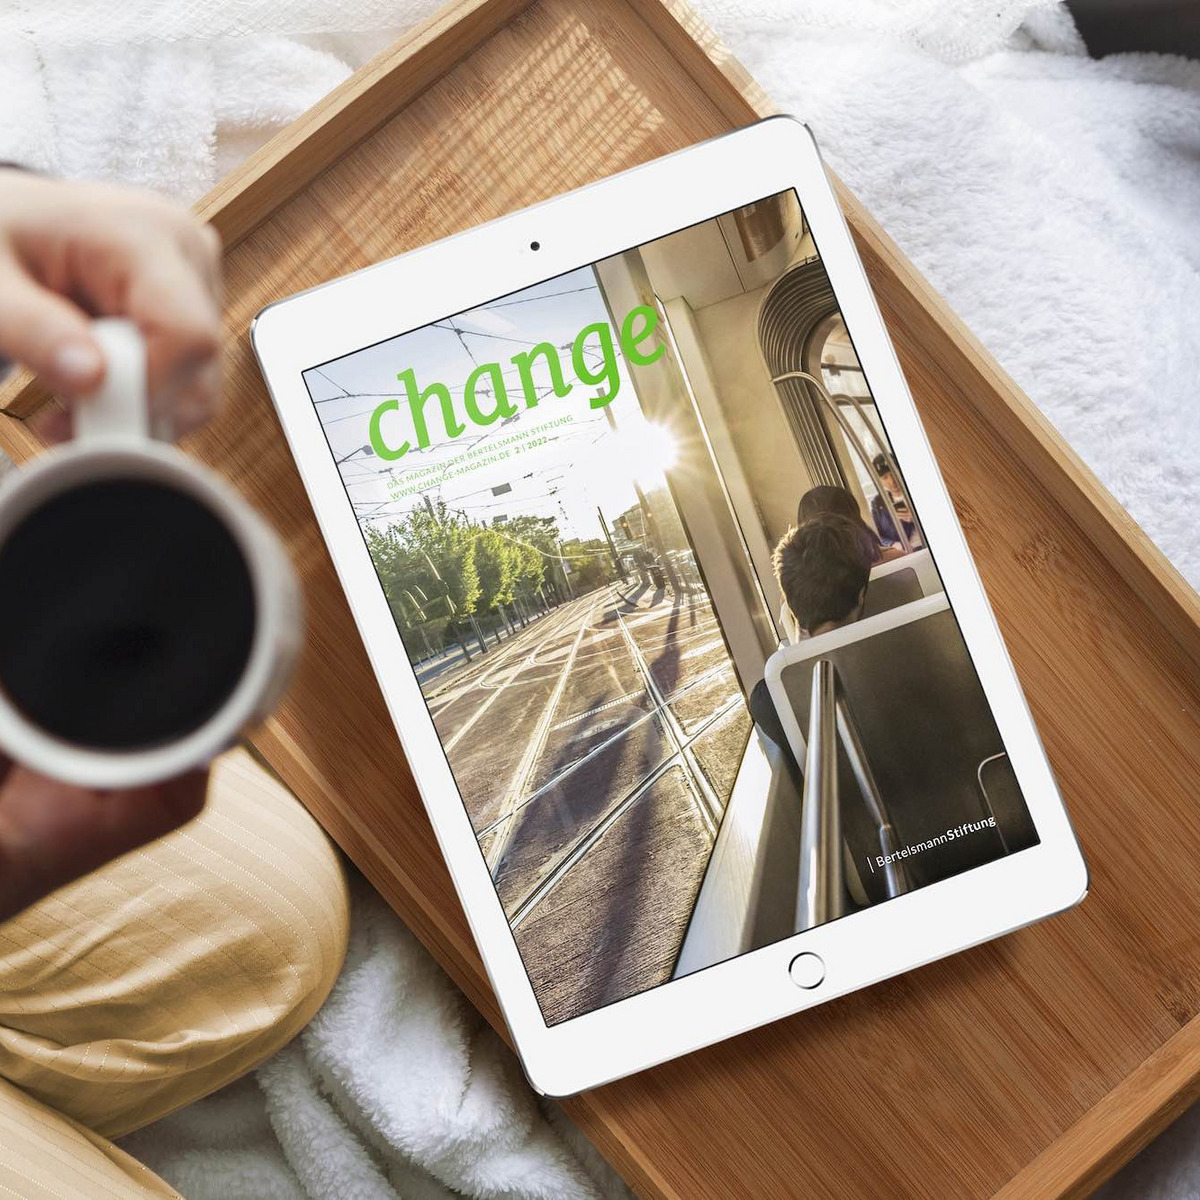 Eine Person sitzt mit einem Kaffee in der Hand vor einem Tablet, auf dem das neue change Magazin der Bertelsmann Stiftung abgebildet ist.